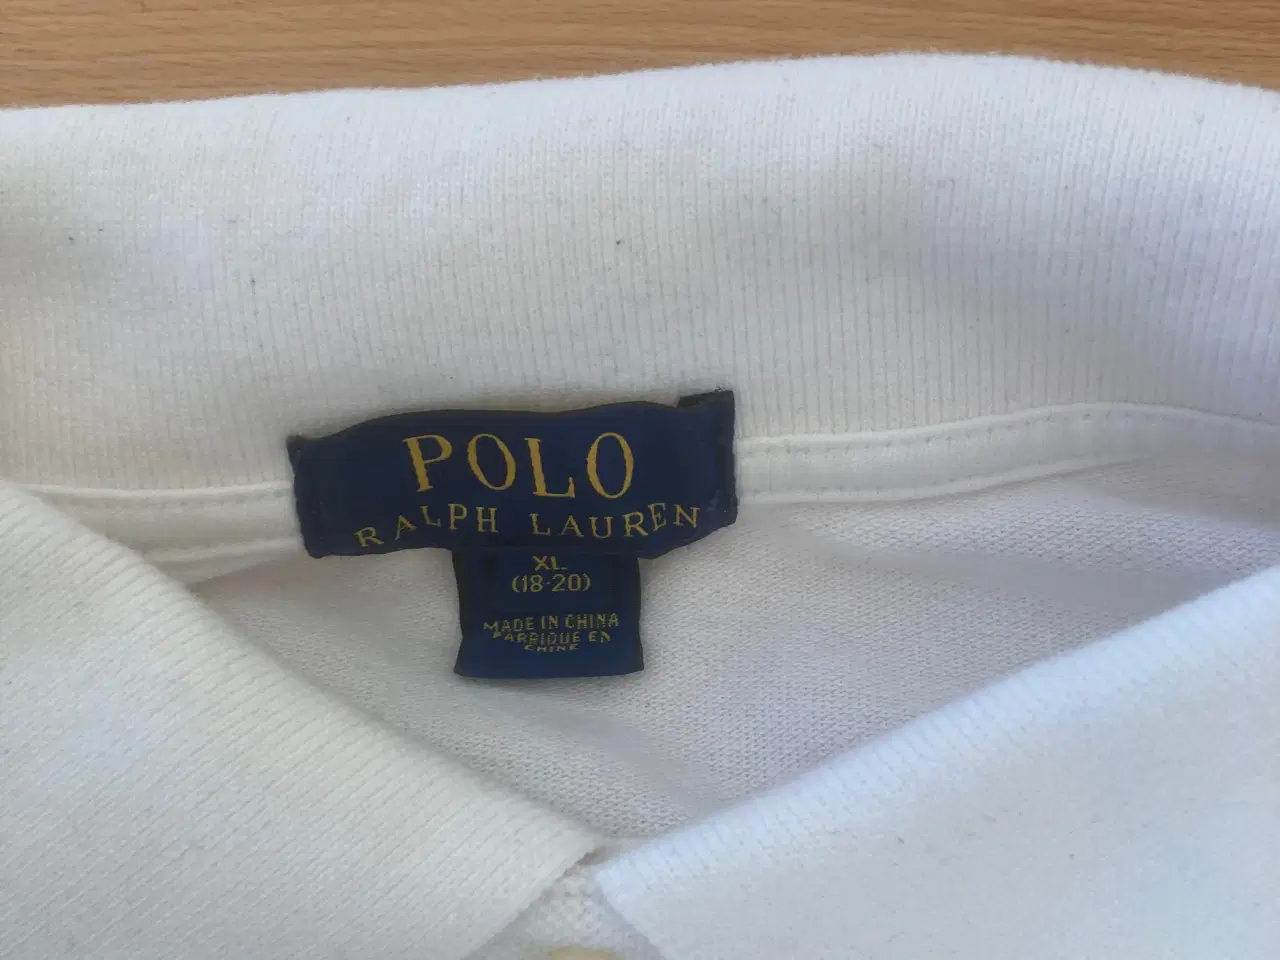 Billede 2 - Ralph Lauren polo T-shirt 